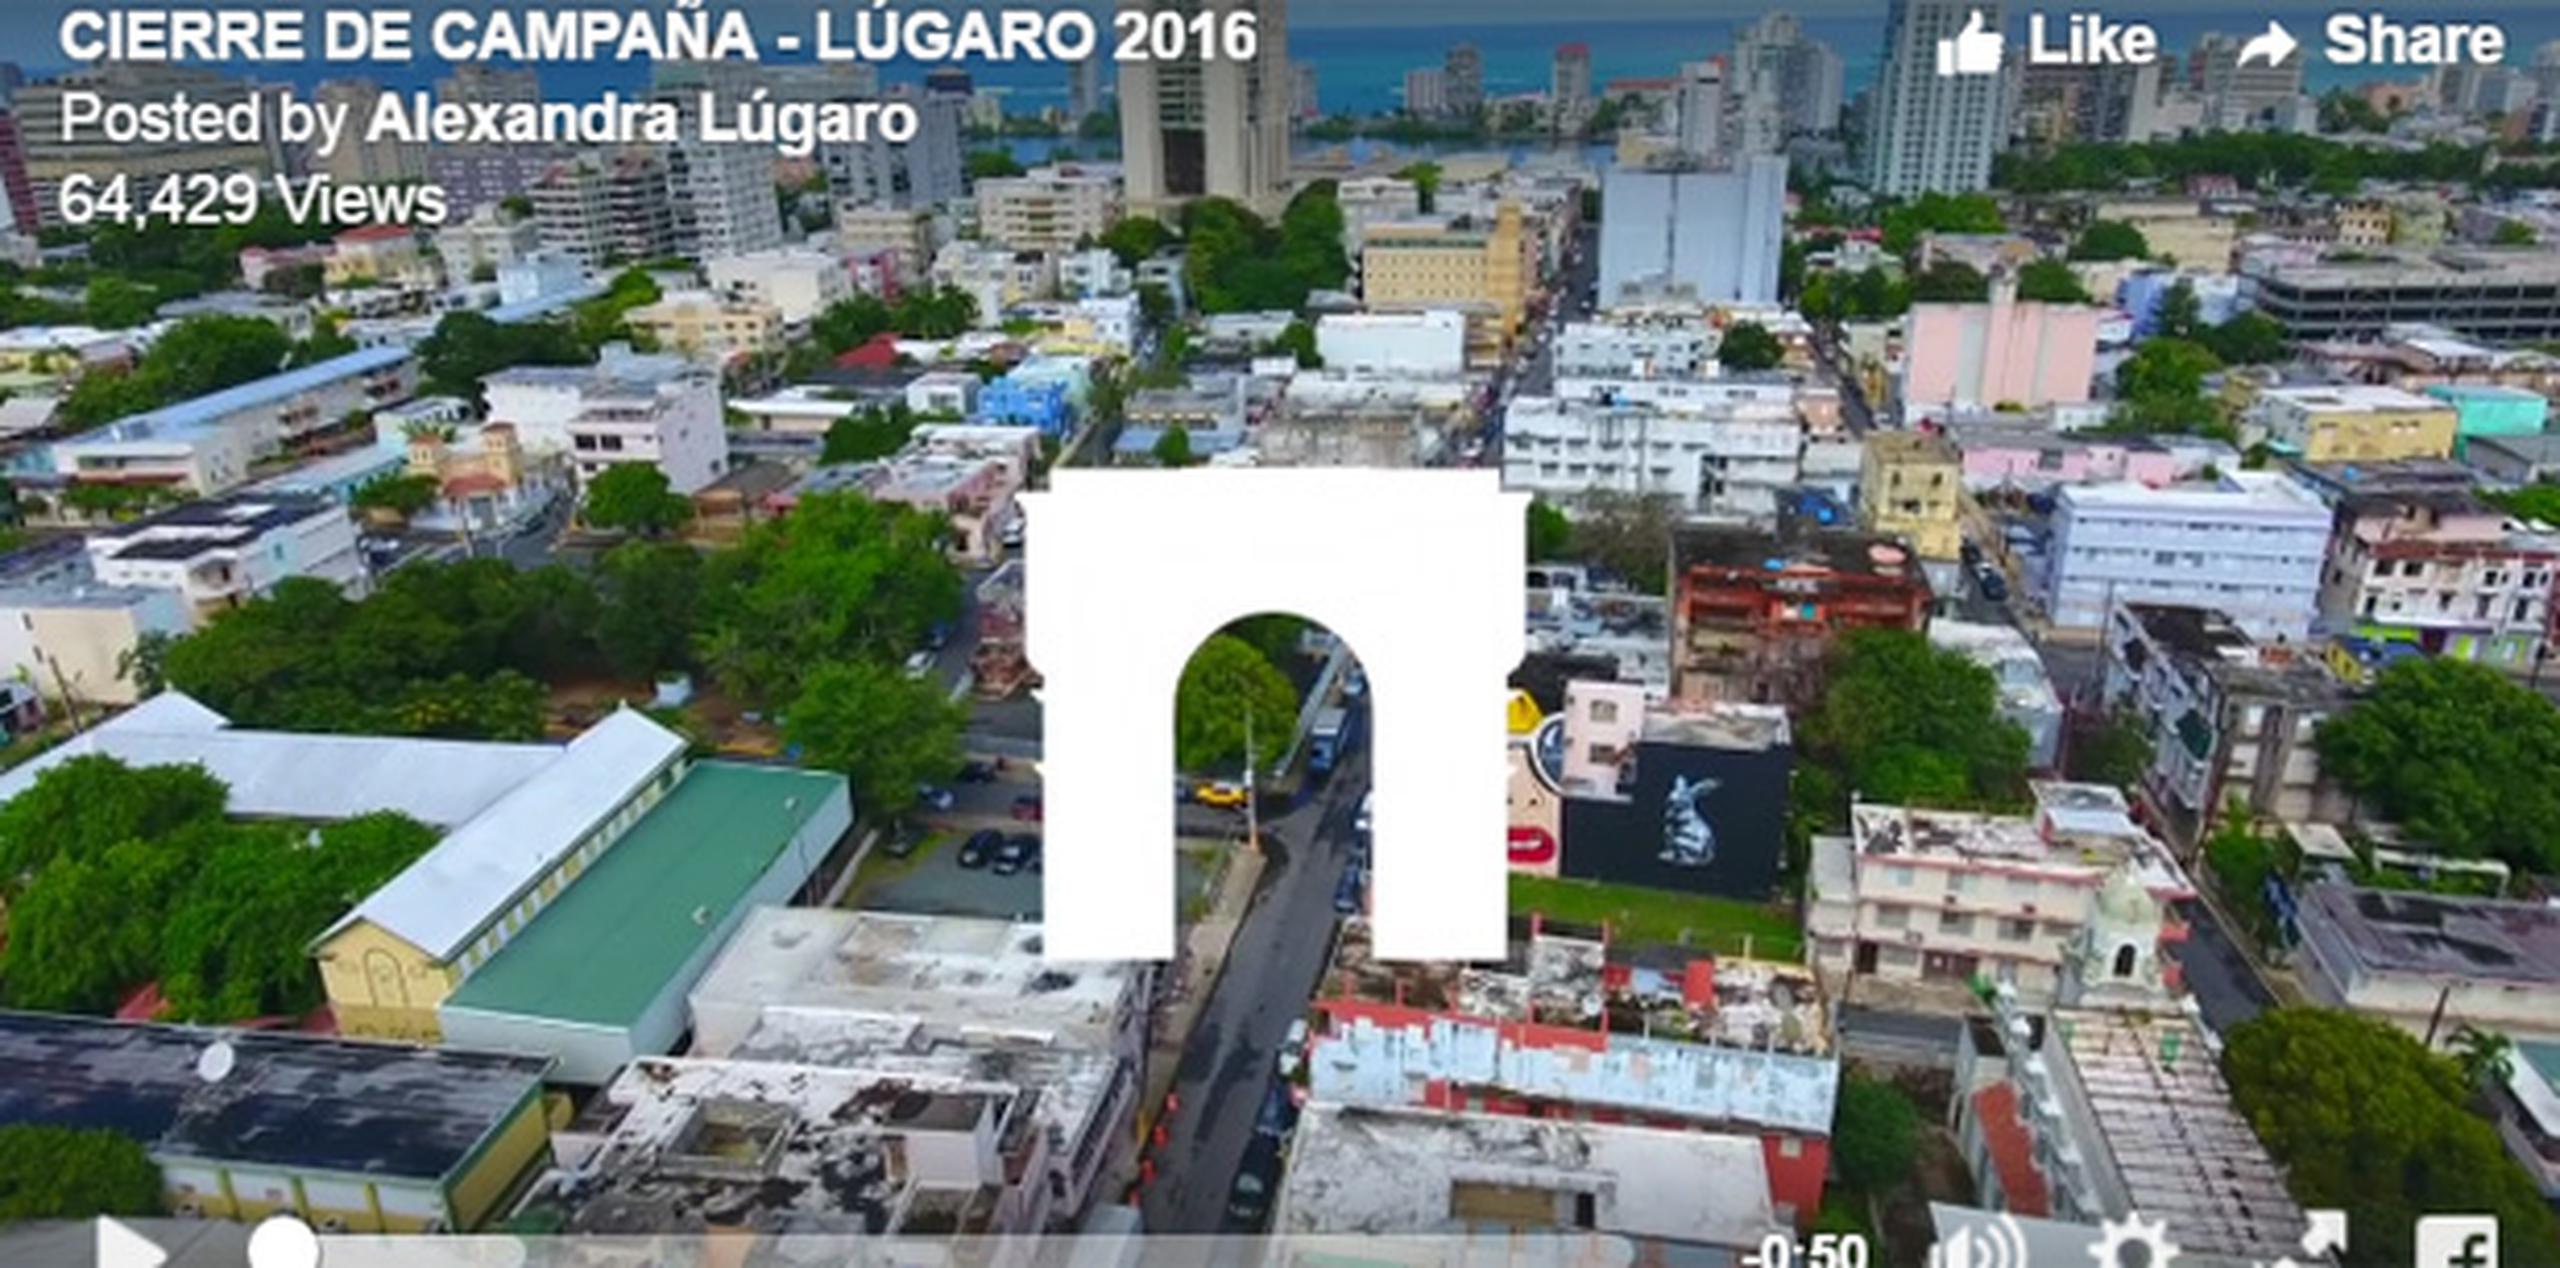 El vídeo, publicado ayer por Lúgaro en su página de Facebook, muestra imágenes de Santurce en las que se destacan varios de los murales que adornan sus calles. (Facebook)